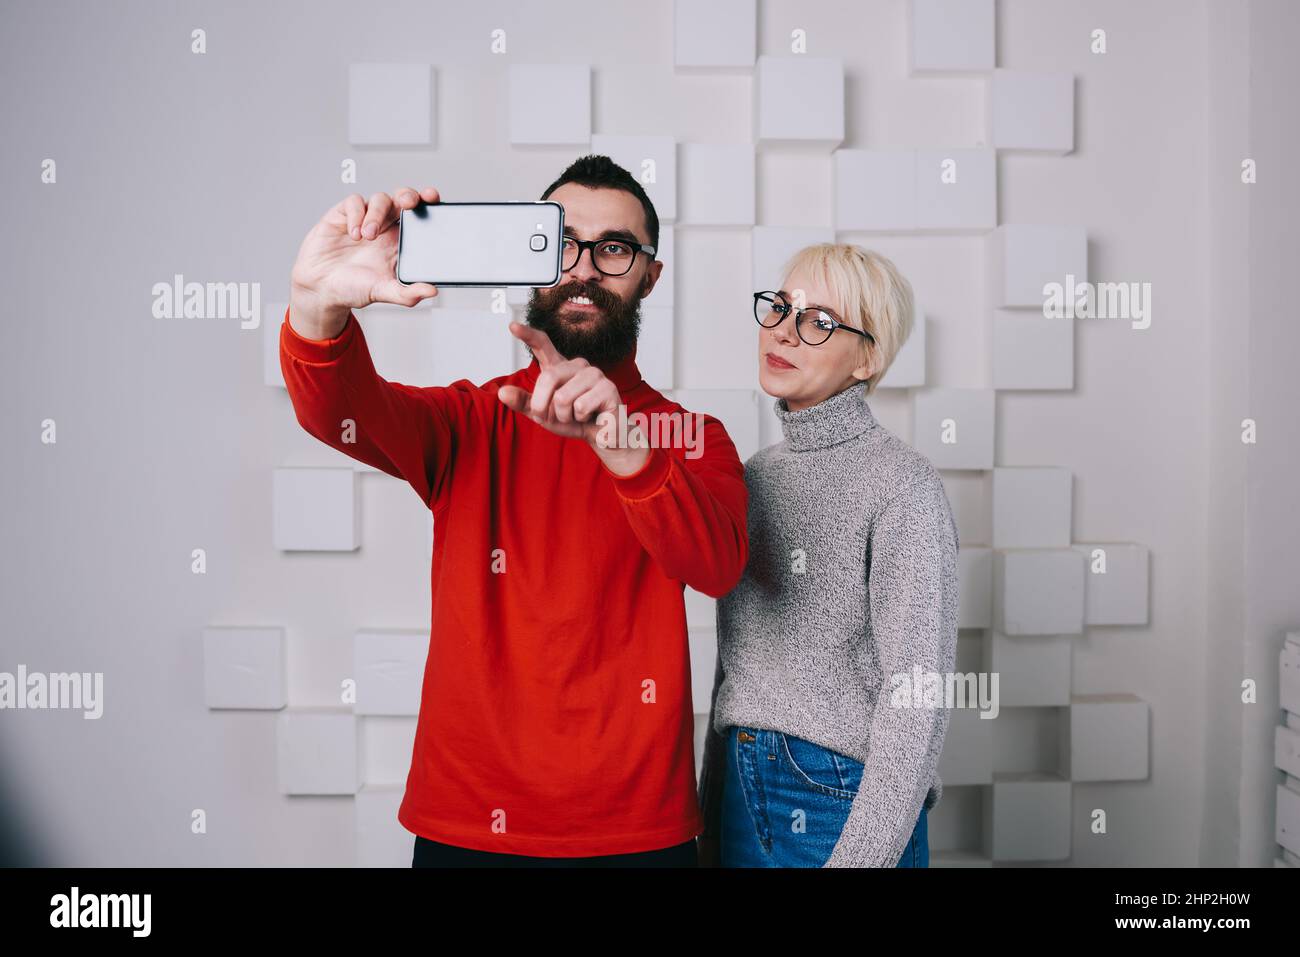 Coppia soddisfatta che si prepara a prendere selfie in studio Foto Stock